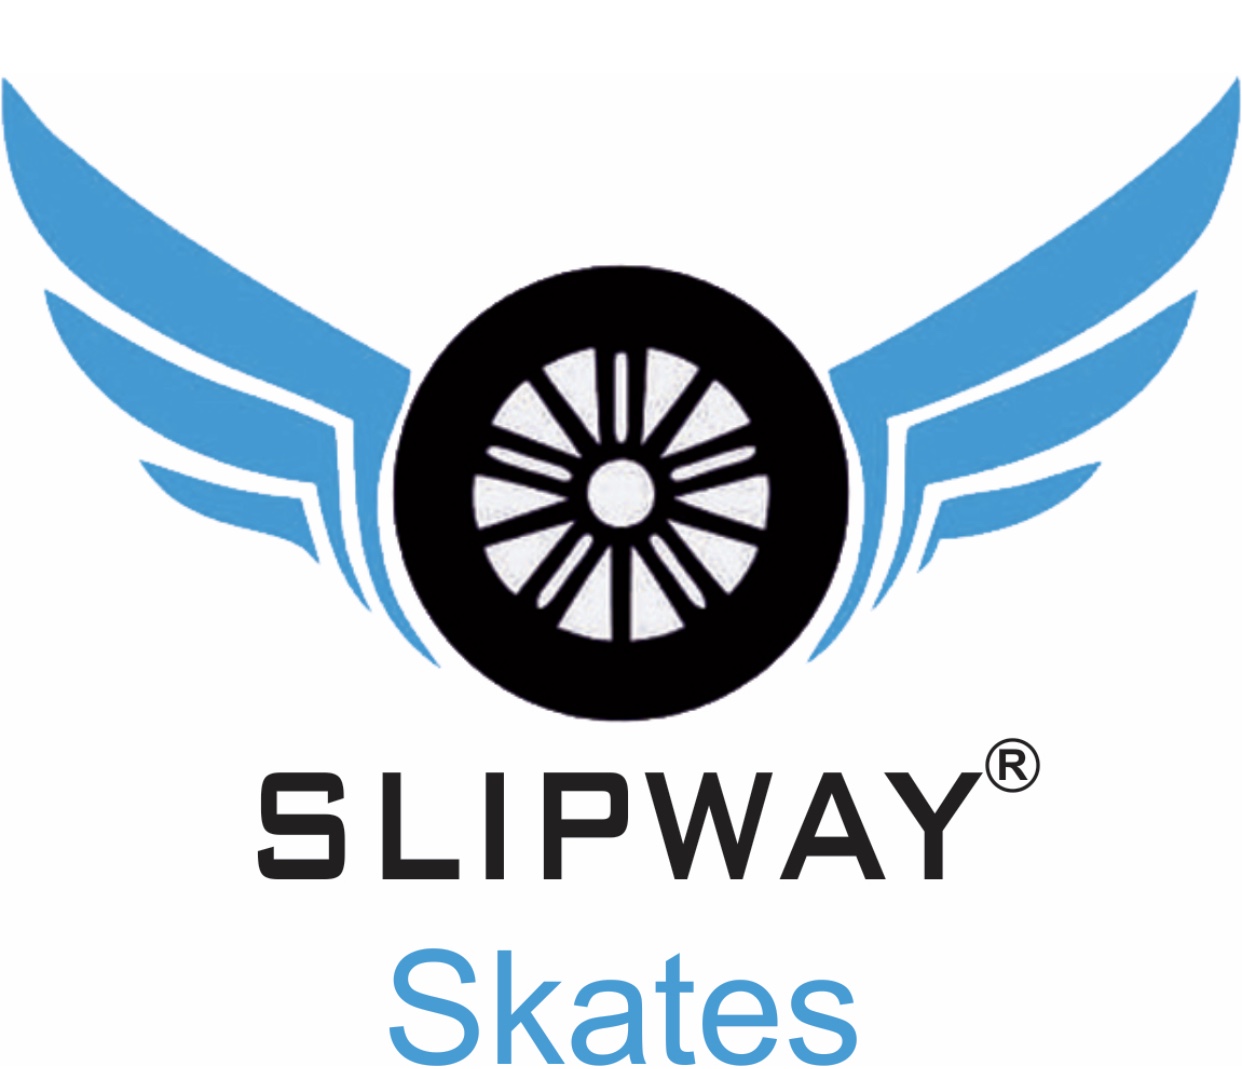 Slipway Skates Company